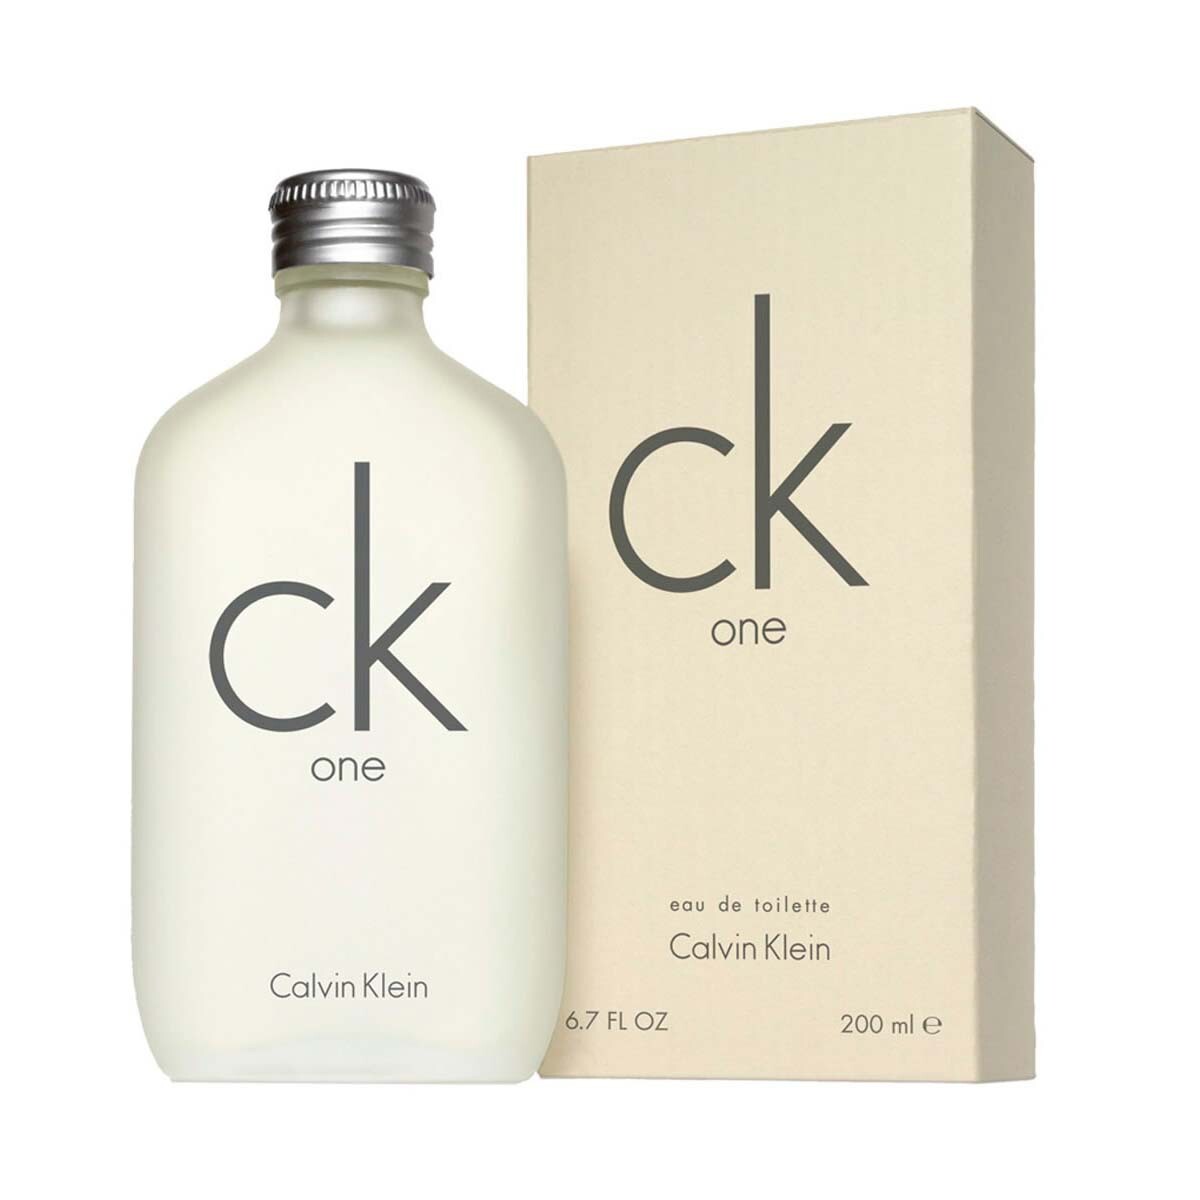 Perfume Calvin Klein Ck One Edt 200 ml 